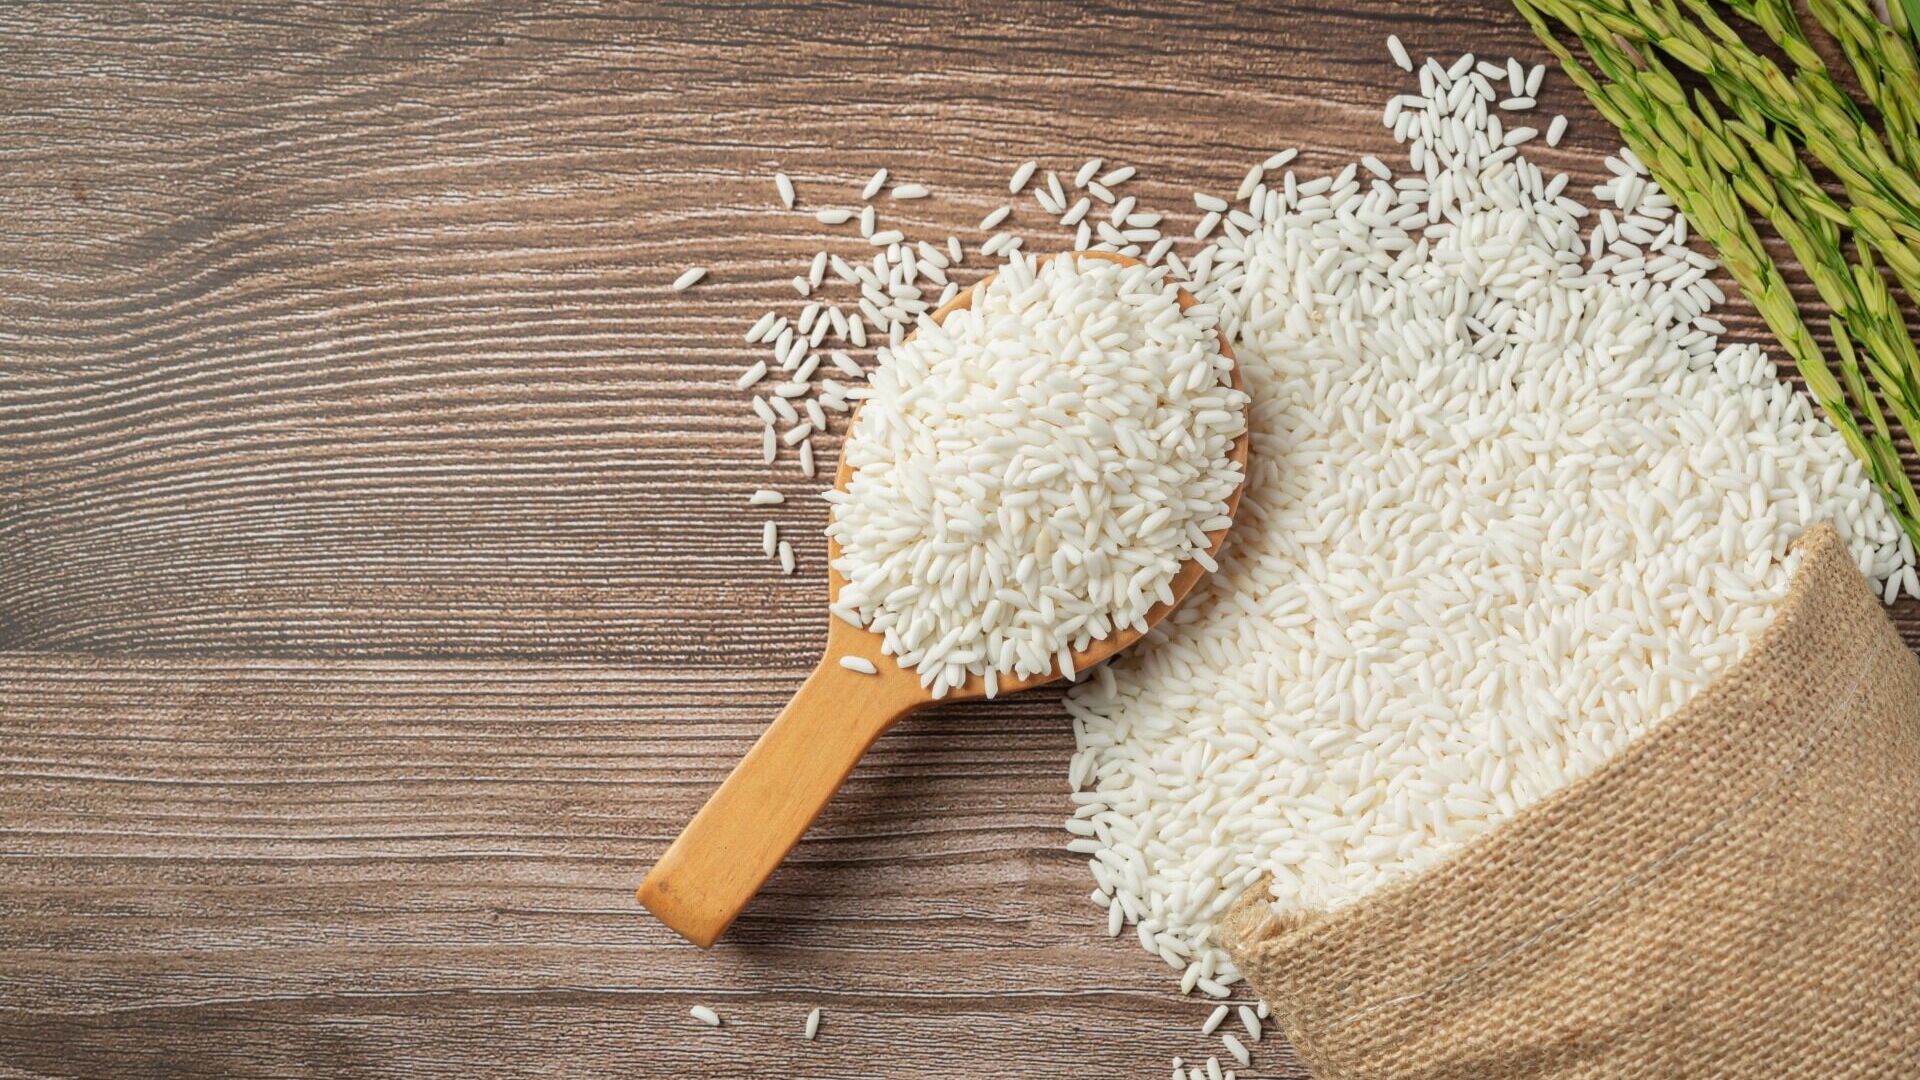 Крупная партия риса из КНР проходит лабораторную проверку в Хабаровске